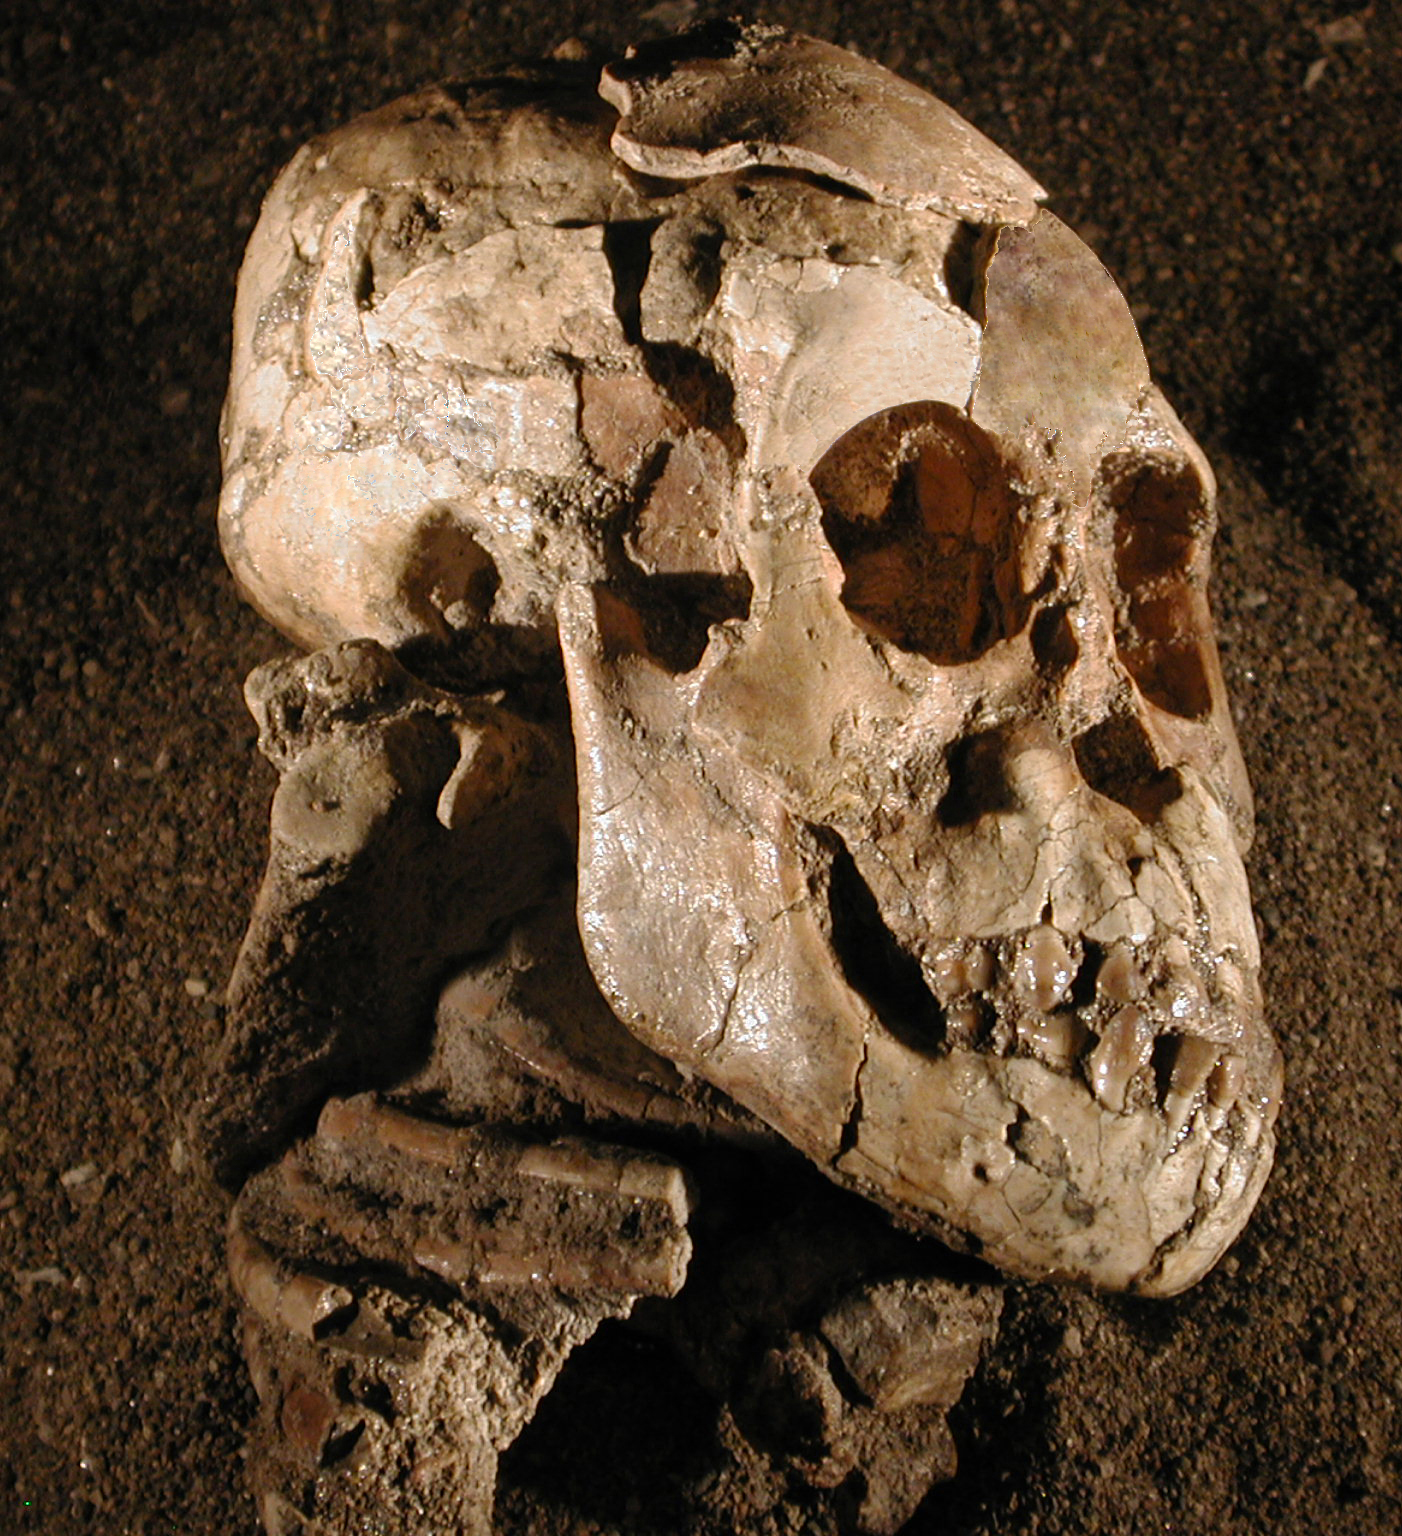 Vue latérale du crâne, de la face et de la mandibule de Selam, un Australopithecus afarensis de 3 ans ayant vécu voici 3,3 millions d’années. L’omoplate droite complète est visible, avec sa cavité glénoïde, son acromion et son processus coracoïde, sous l’arrière du crâne, à gauche de la mâchoire&nbsp;et au-dessus des côtes. © Zeray Alemseged, Dikika Research Project